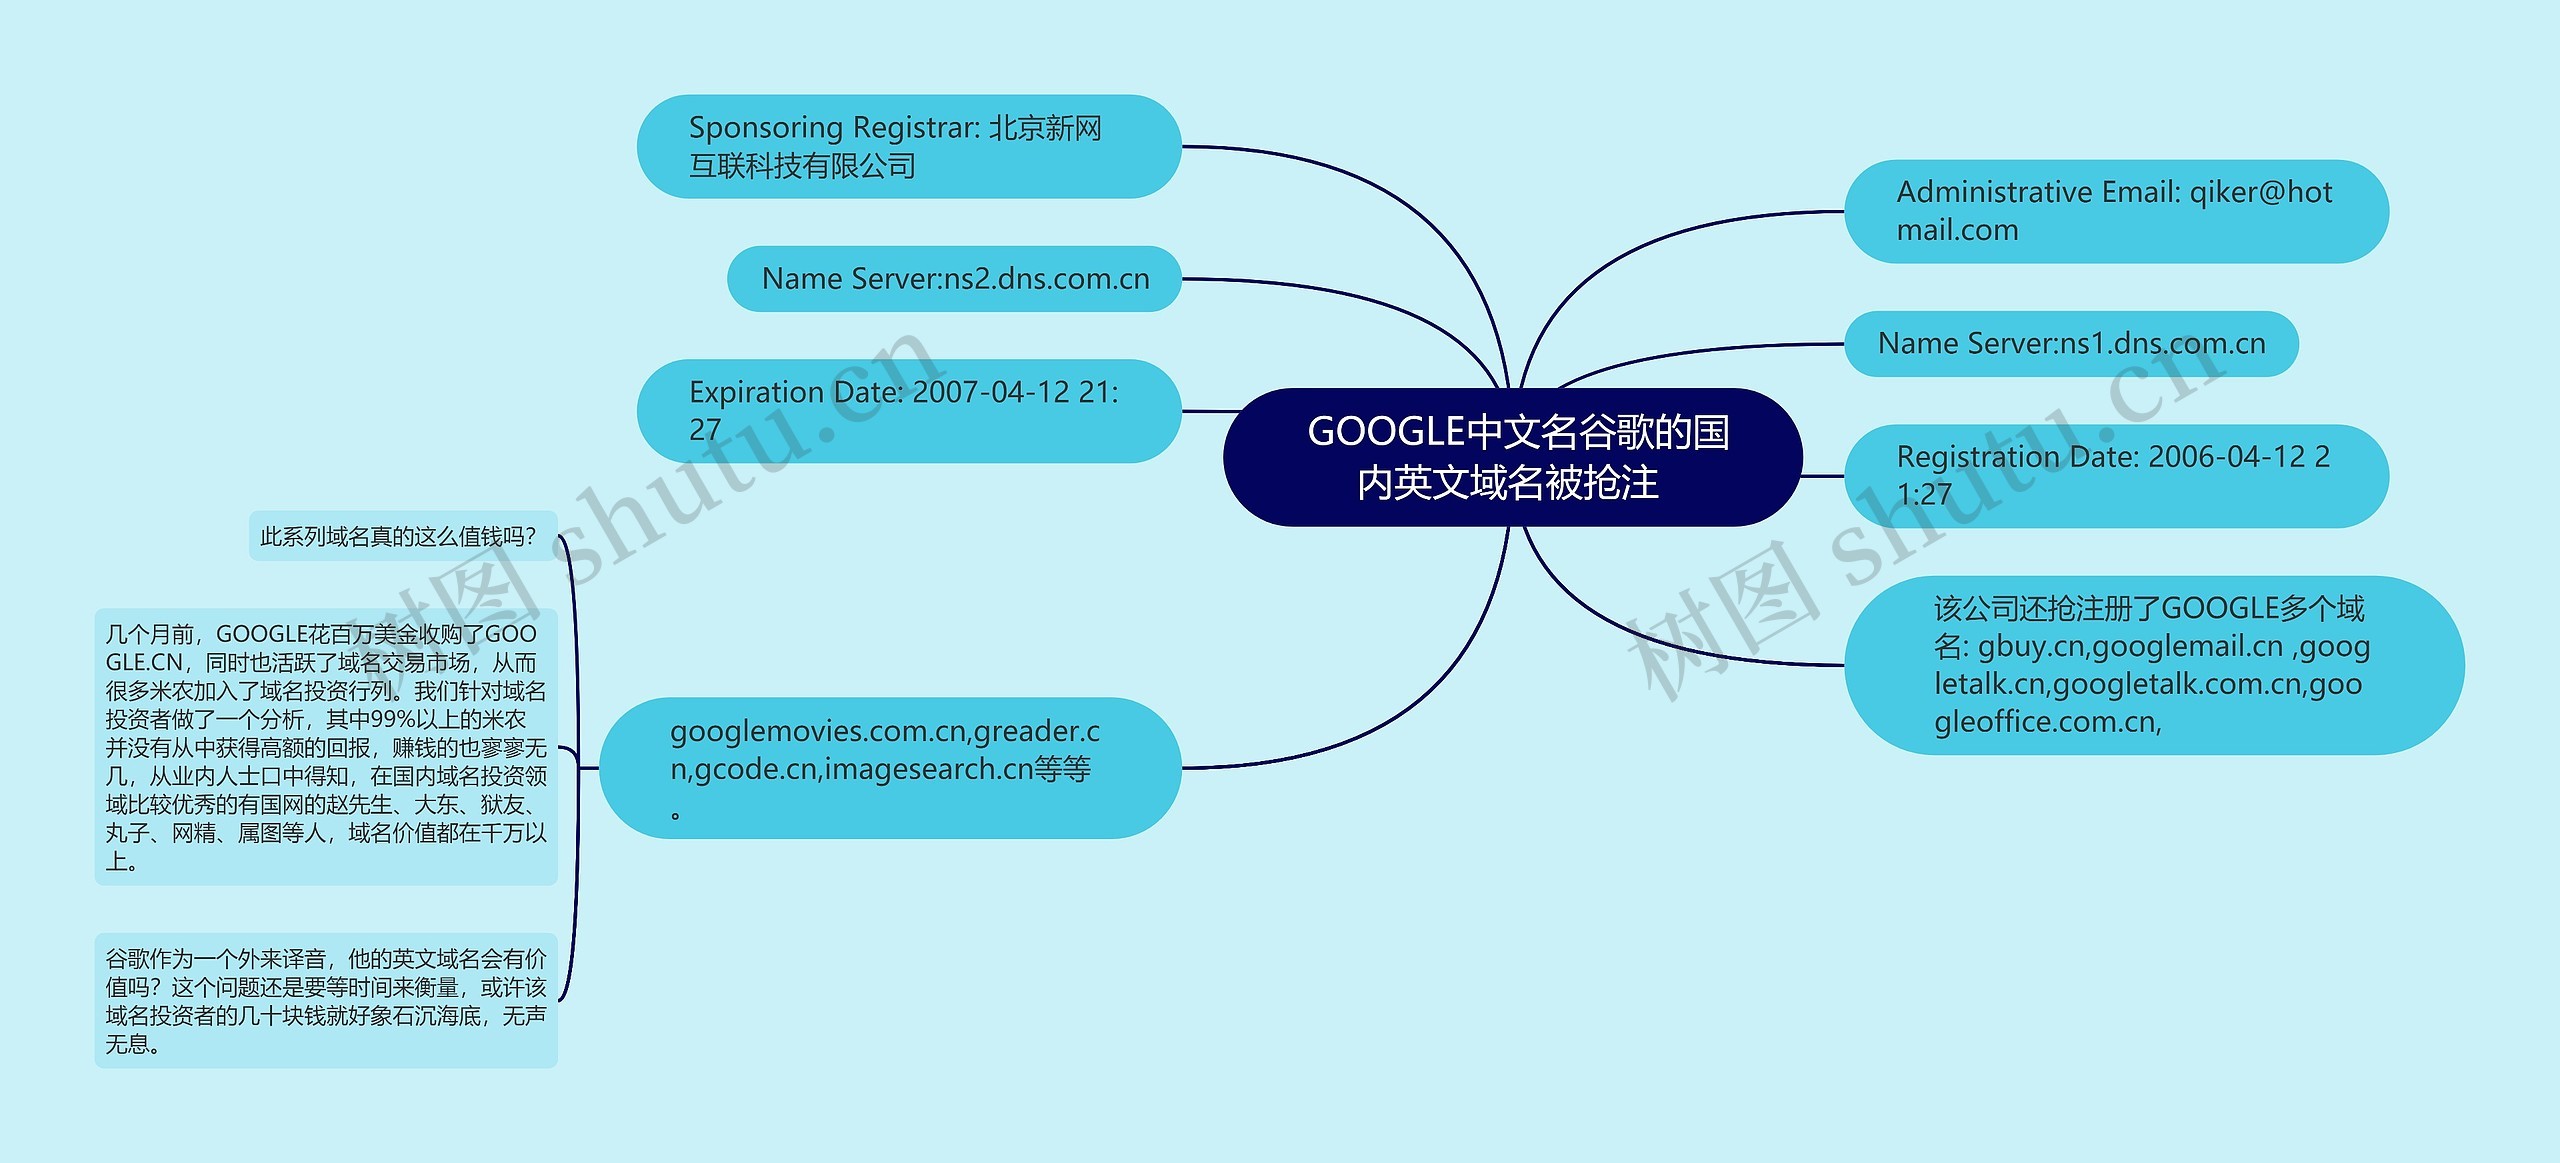  GOOGLE中文名谷歌的国内英文域名被抢注 思维导图